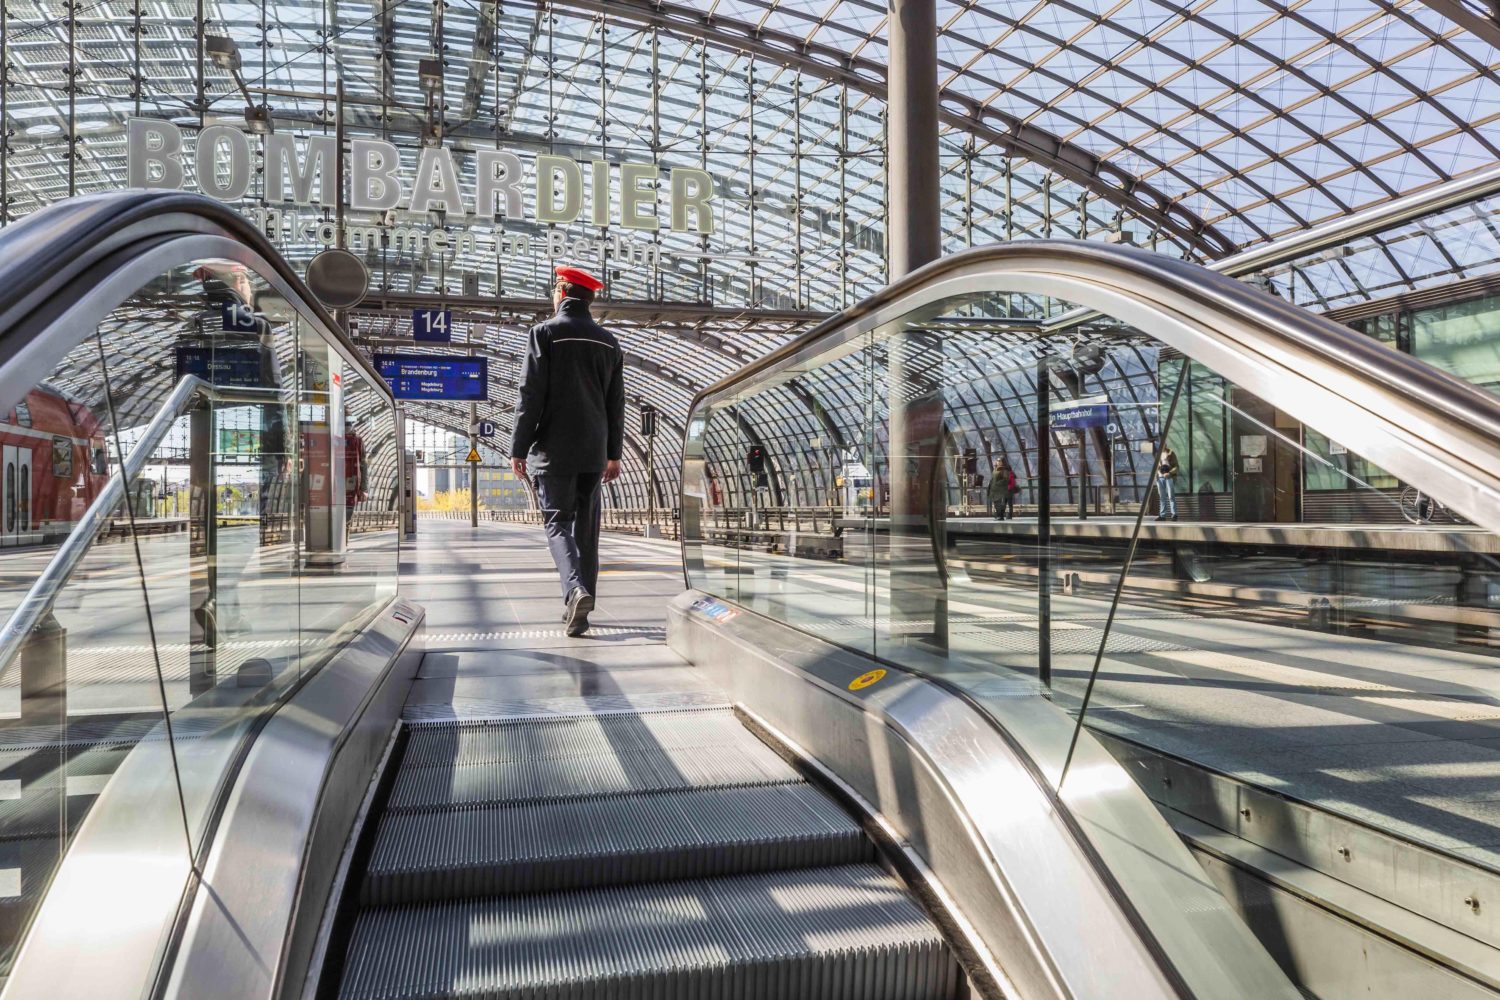 Treppen, Rolltreppen und Aufzüge verbinden die Ebenen des Berliner Hauptbahnhofs miteinander. Foto: Imago Images/imagebroker